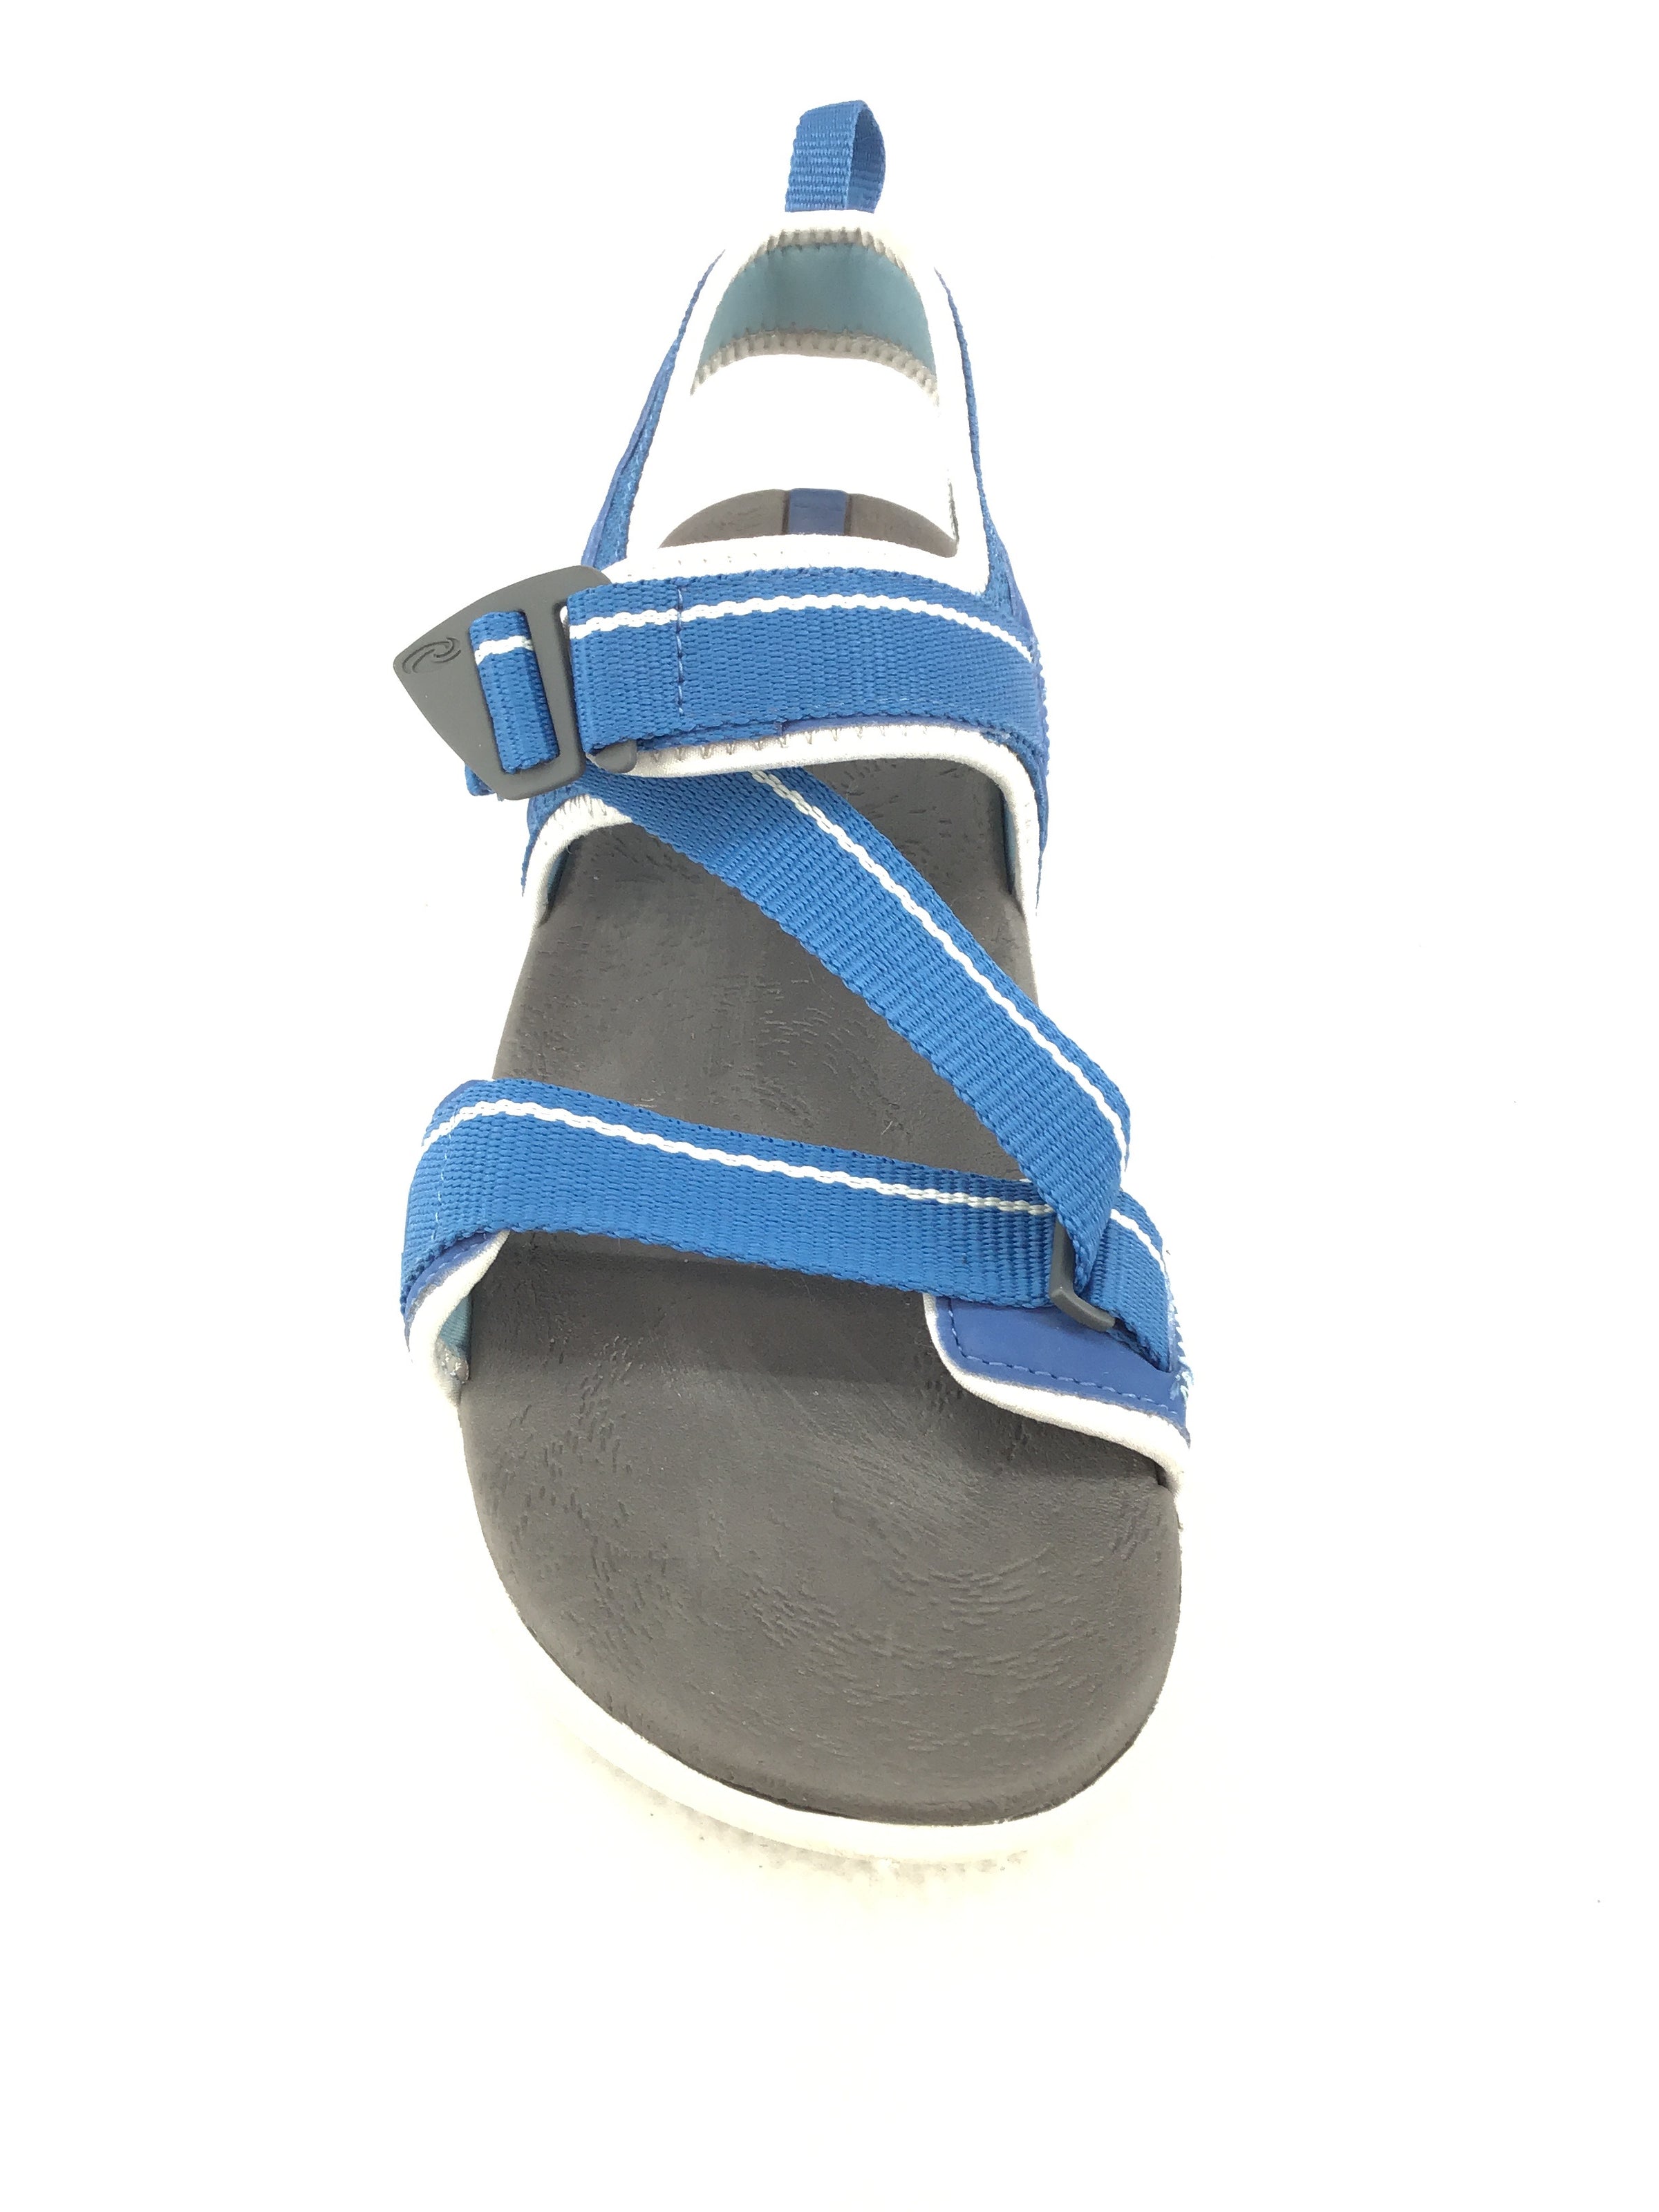 Sole Navigate Sandals Size 9